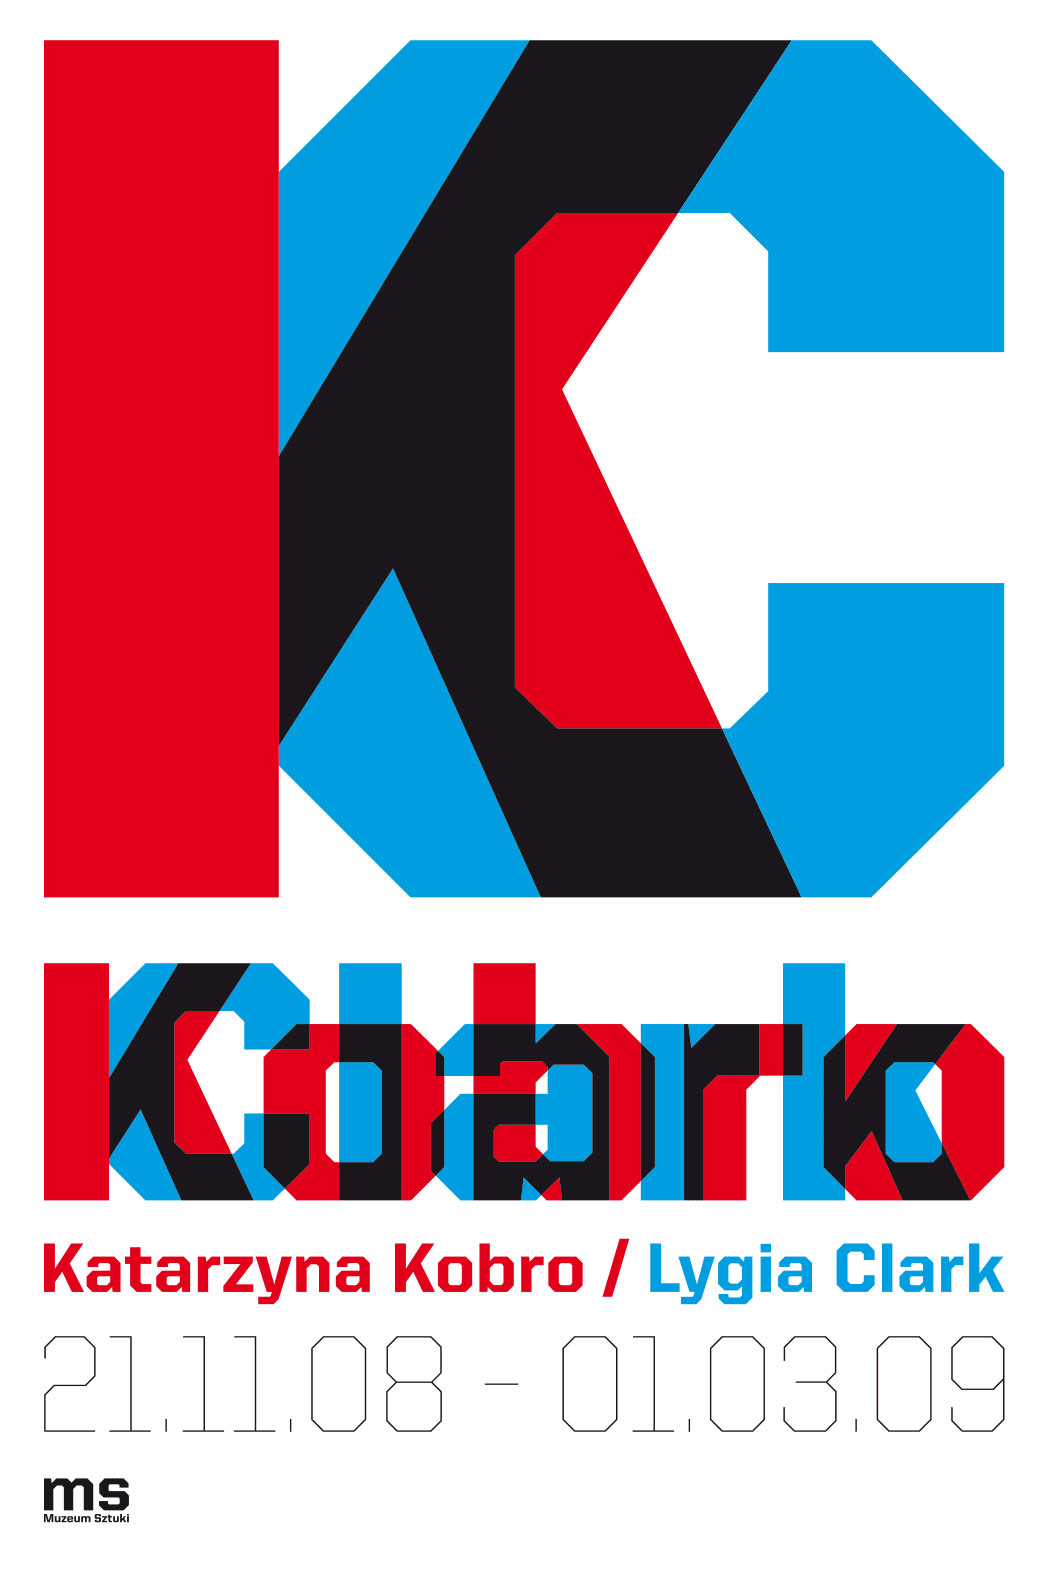 lidia-clark-katarzyna-kobro-muzeum-sztuki-lodz-id-exhibition-poster-design-hakobo-jakub-stepien-17